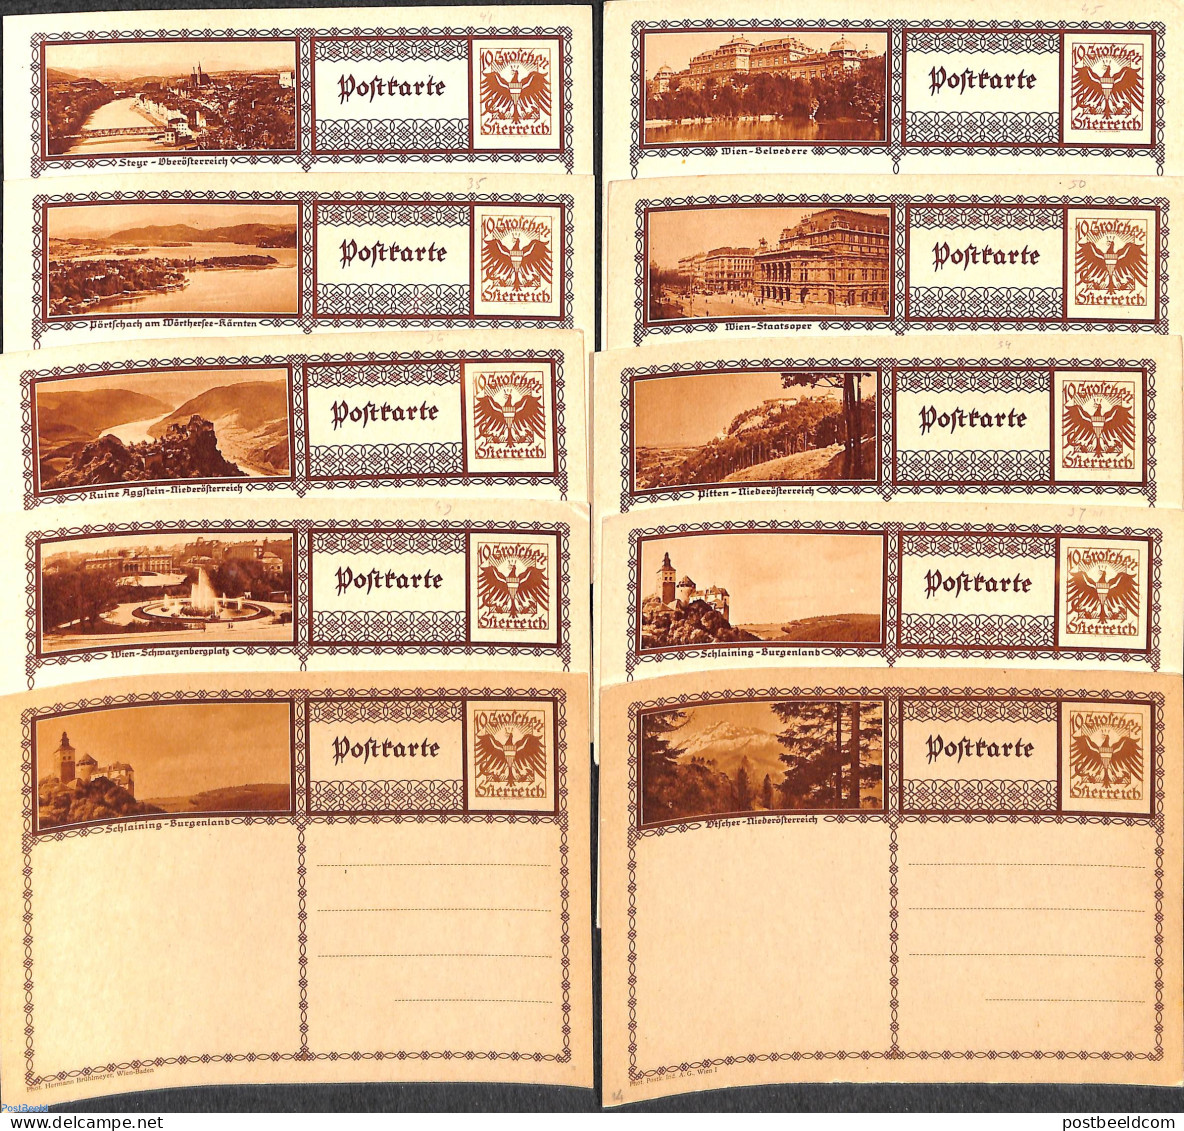 Austria 1930 10 Illustrated Postcards, Unused Postal Stationary - Covers & Documents